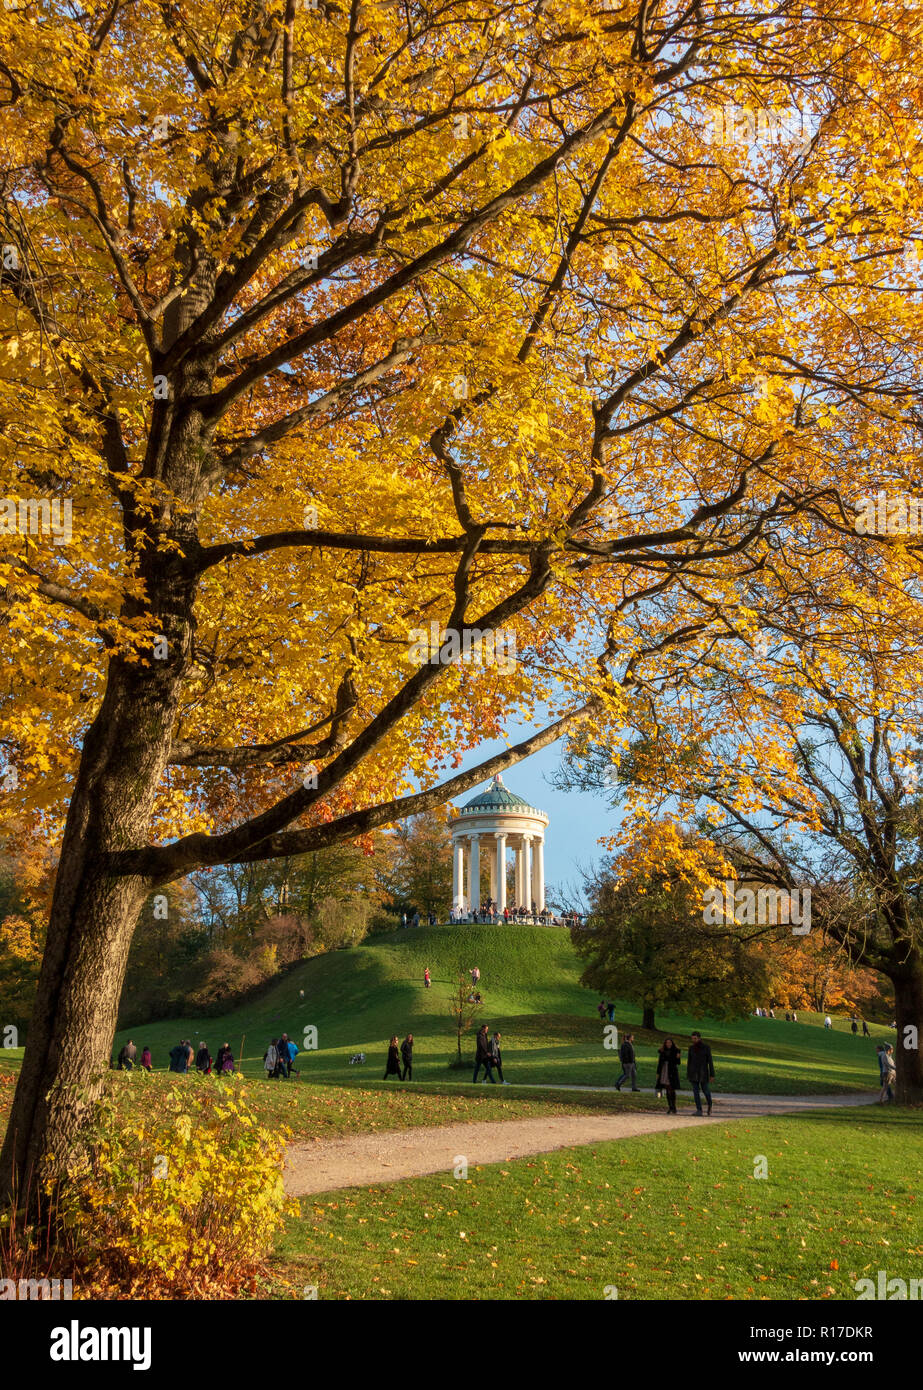 Englischer Garten Park in autumn, Munich, Germany Stock Photo